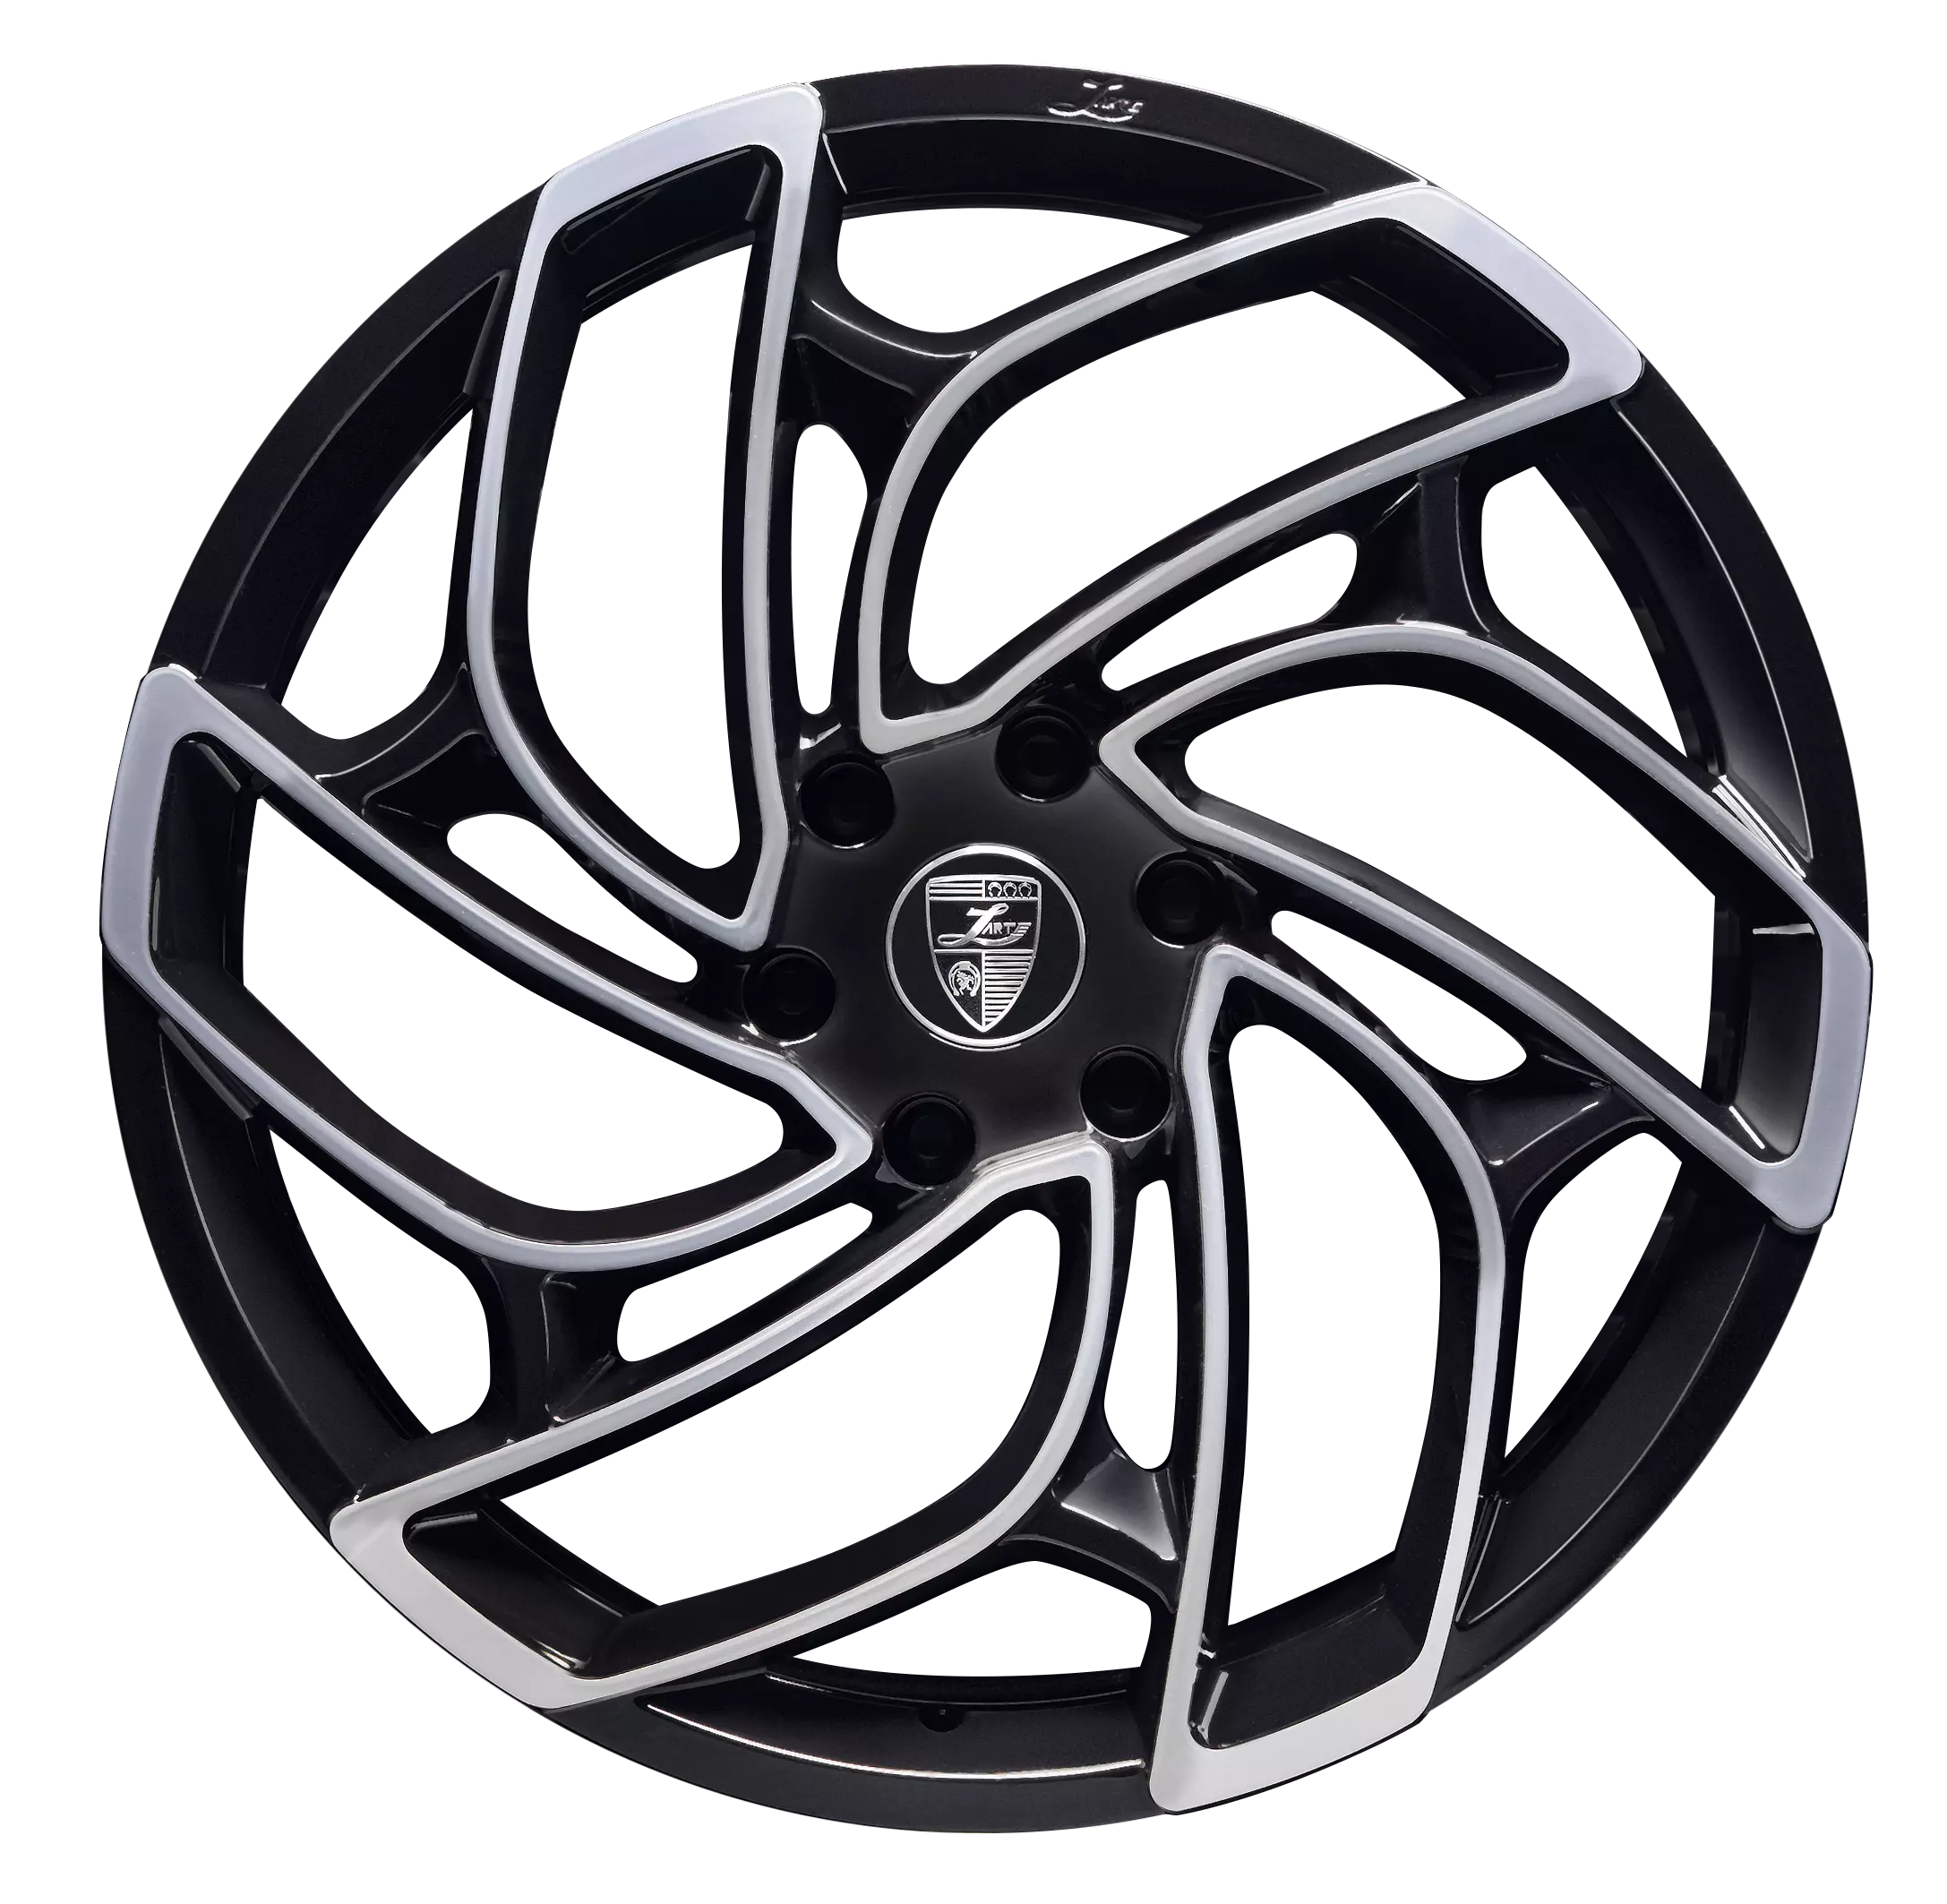 Изготовленные на заказ кованые диски для Cadillac Escalade и Infiniti